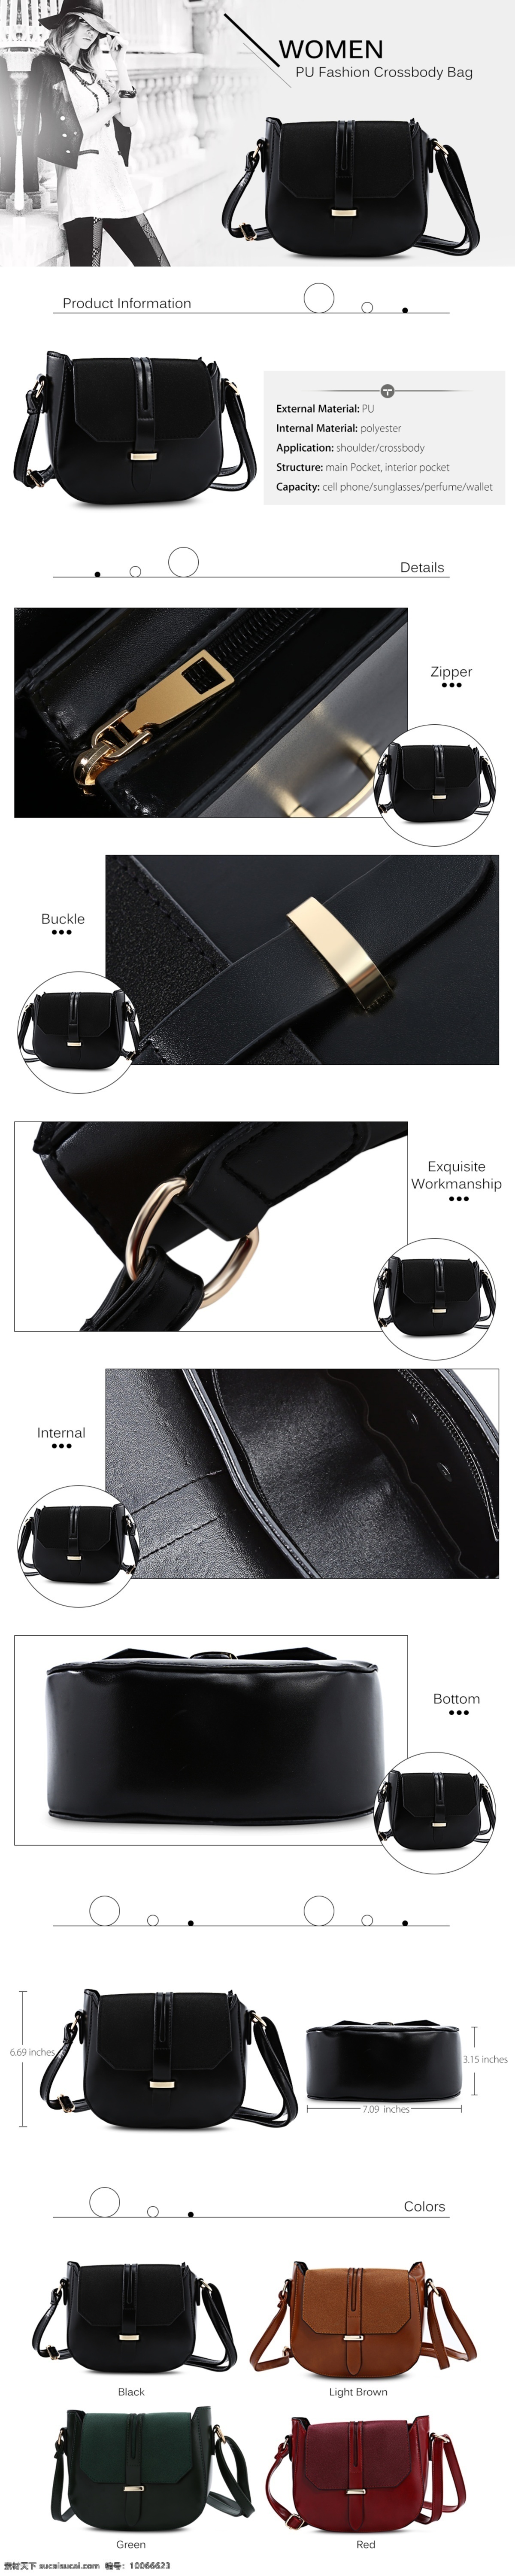 时尚黑色包包 包包 首页 场景图 铆钉 时尚包包 手提包 包包搭配图